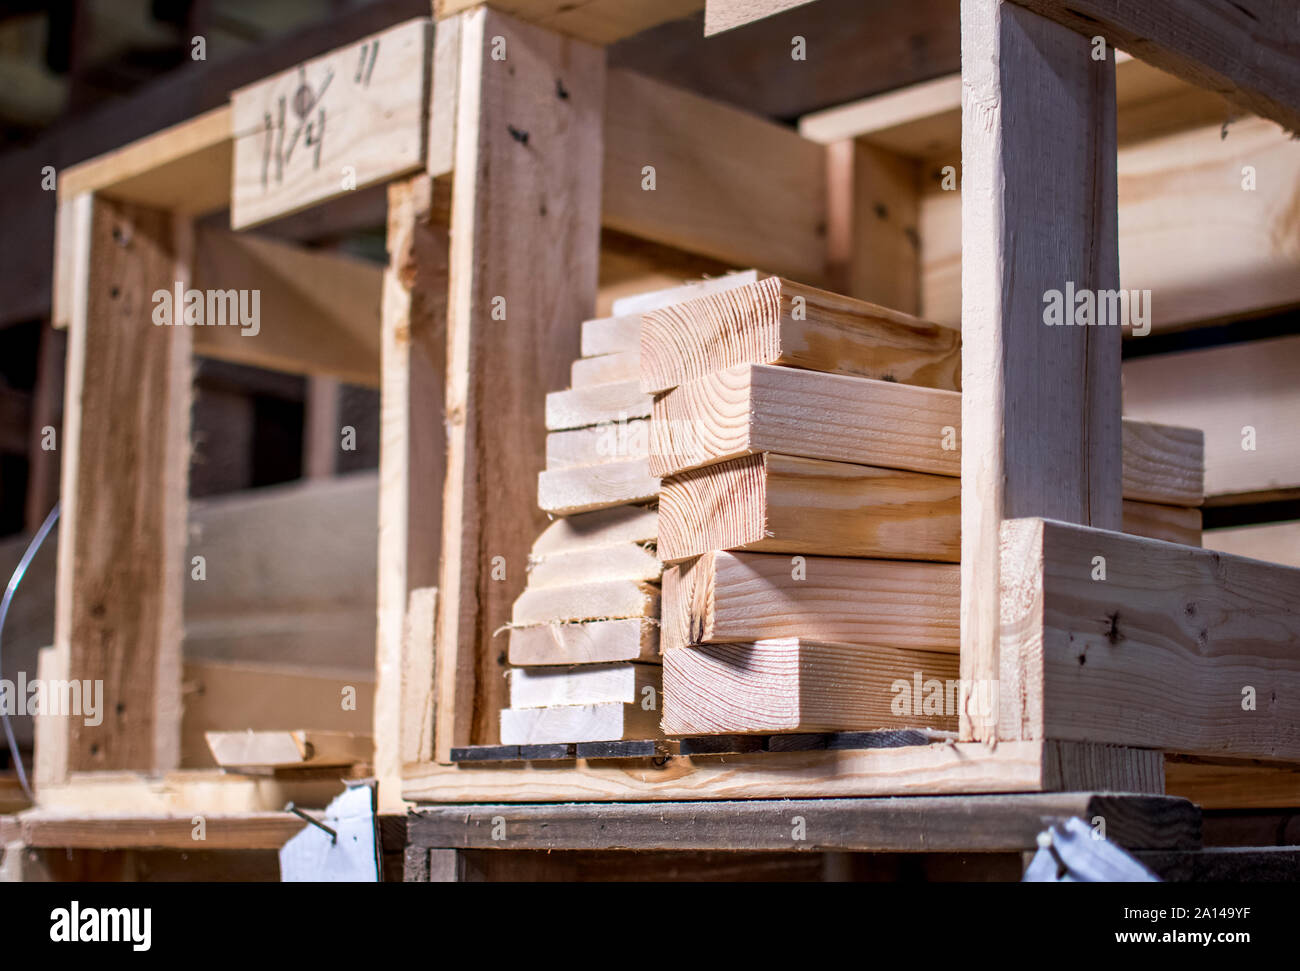 Stapel von cut 2 x 4 Längen aus Holz sind in Holzkisten in einem Holz Arbeitnehmer gespeichert Werkstatt Stockfoto